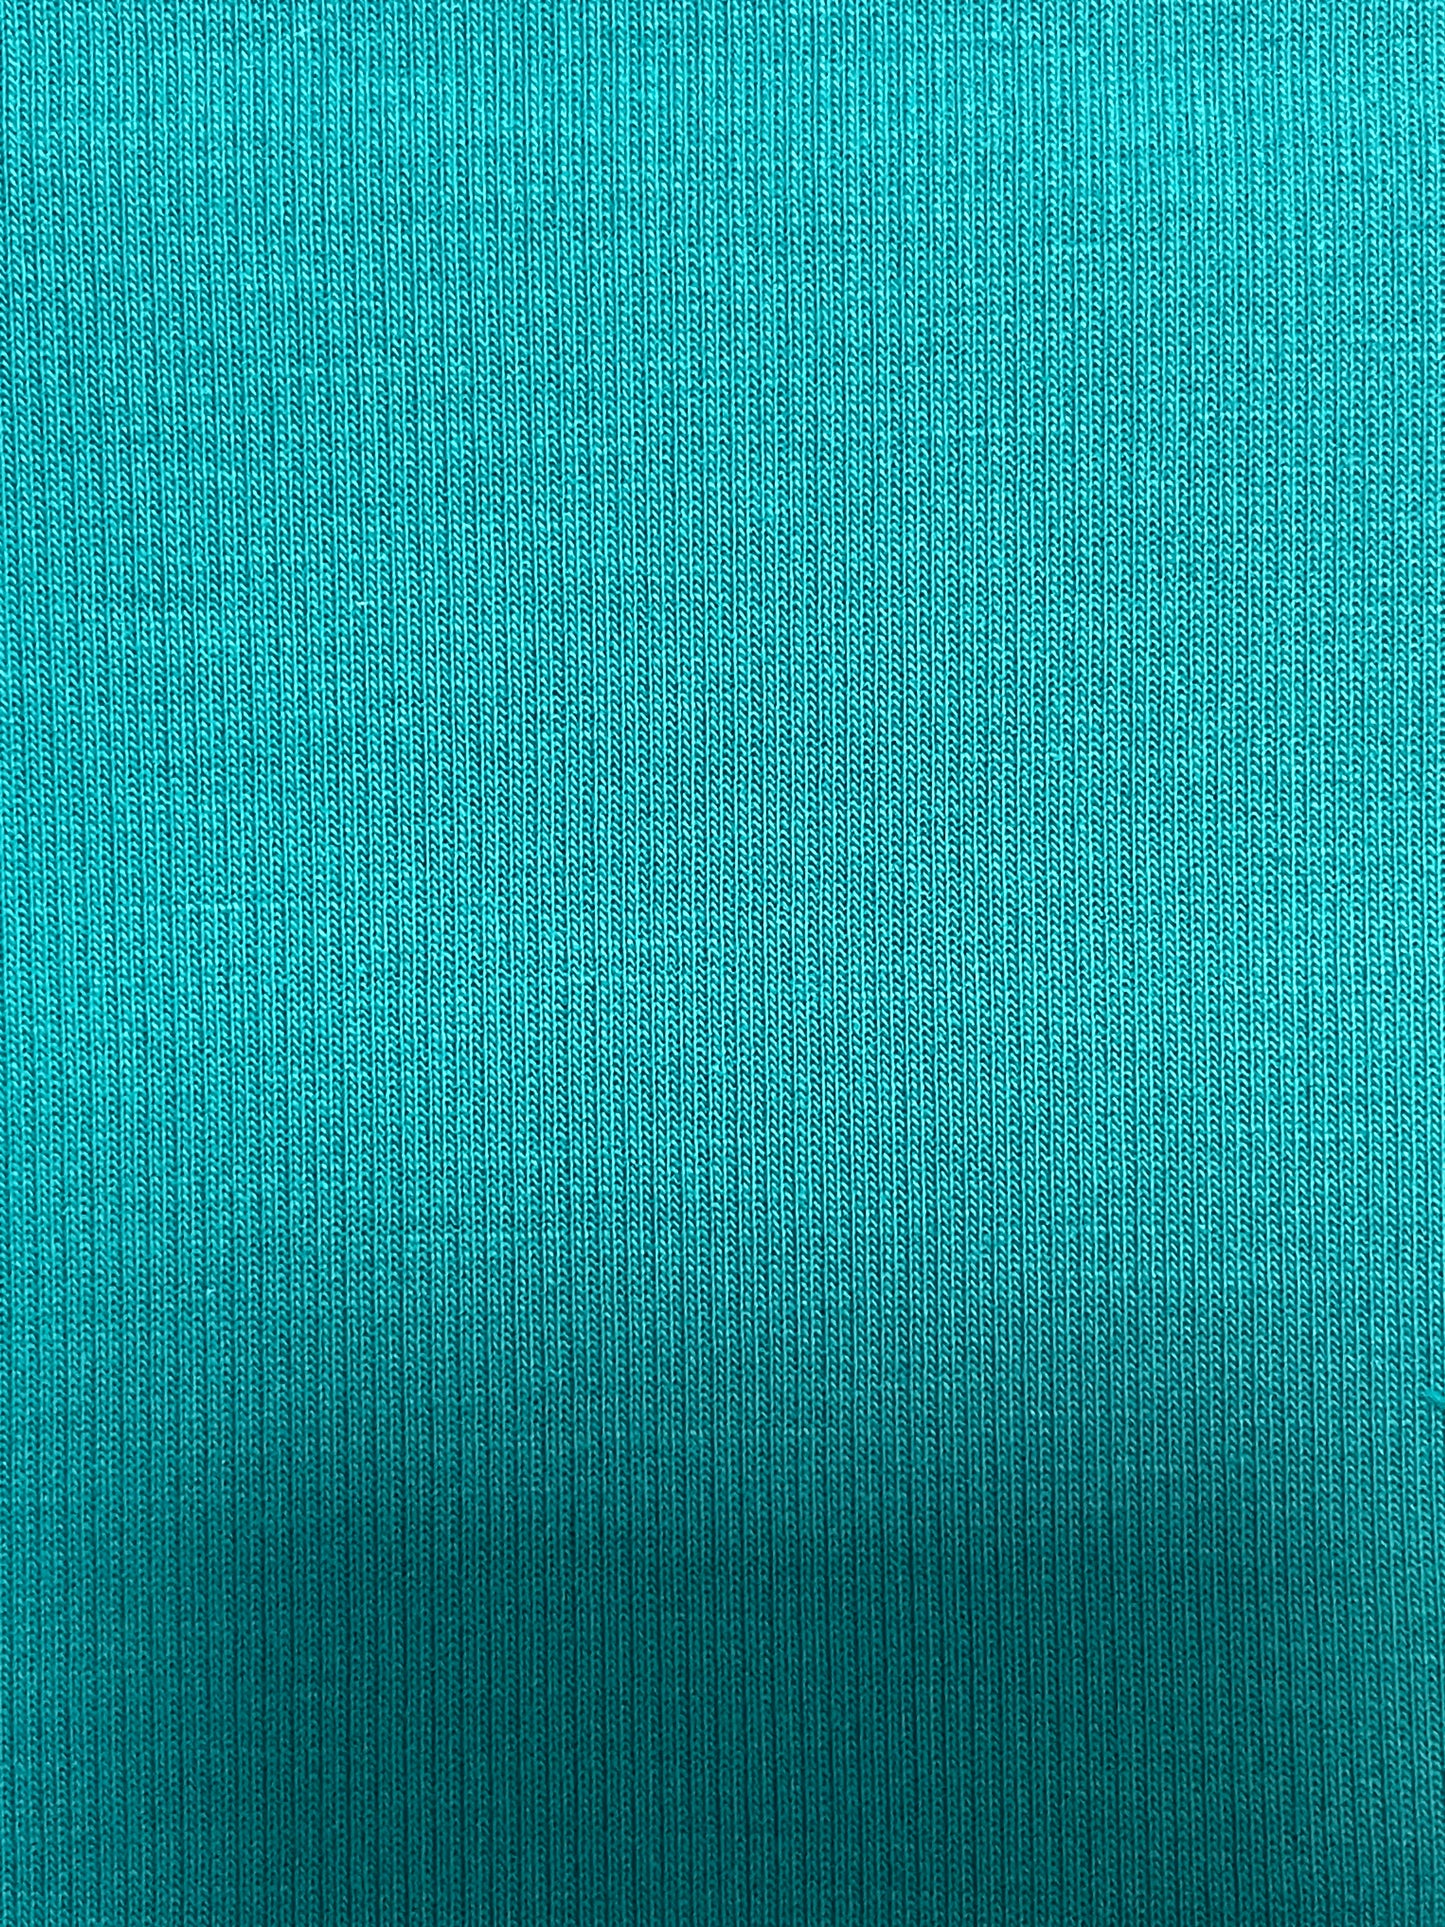 Double-Sided Knit Fabric - Natasha Fabric